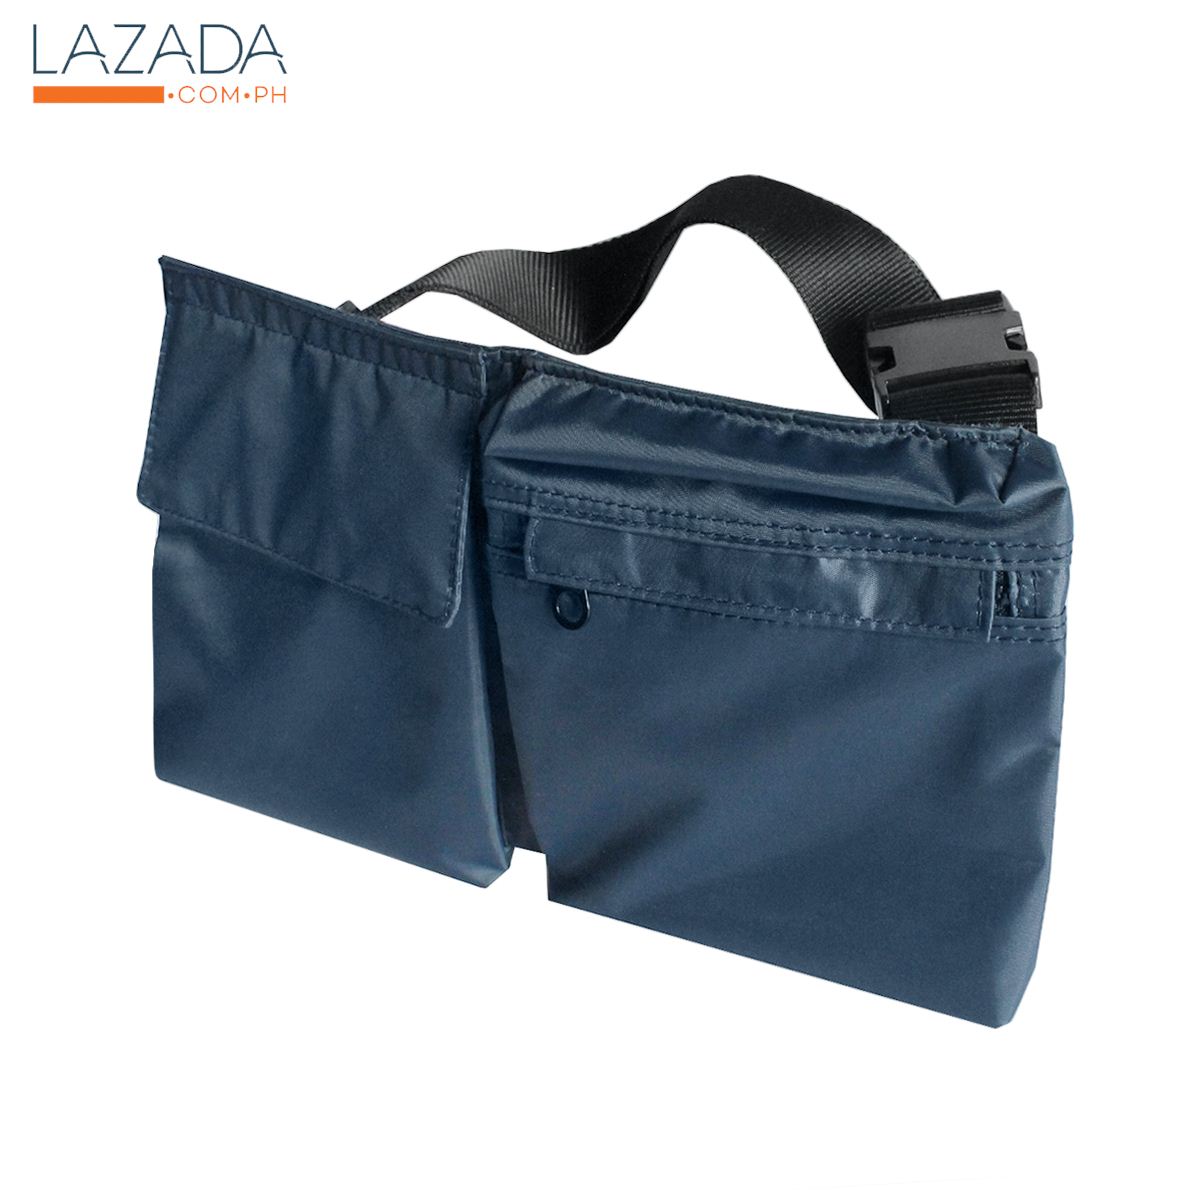 กระเป๋าเป้ผ้าคาดเอวทรงแบน Day Time KASSA HOME รุ่น PSC0017 สีน้ำเงิน โปรโมชั่นสุดคุ้ม โค้งสุดท้าย